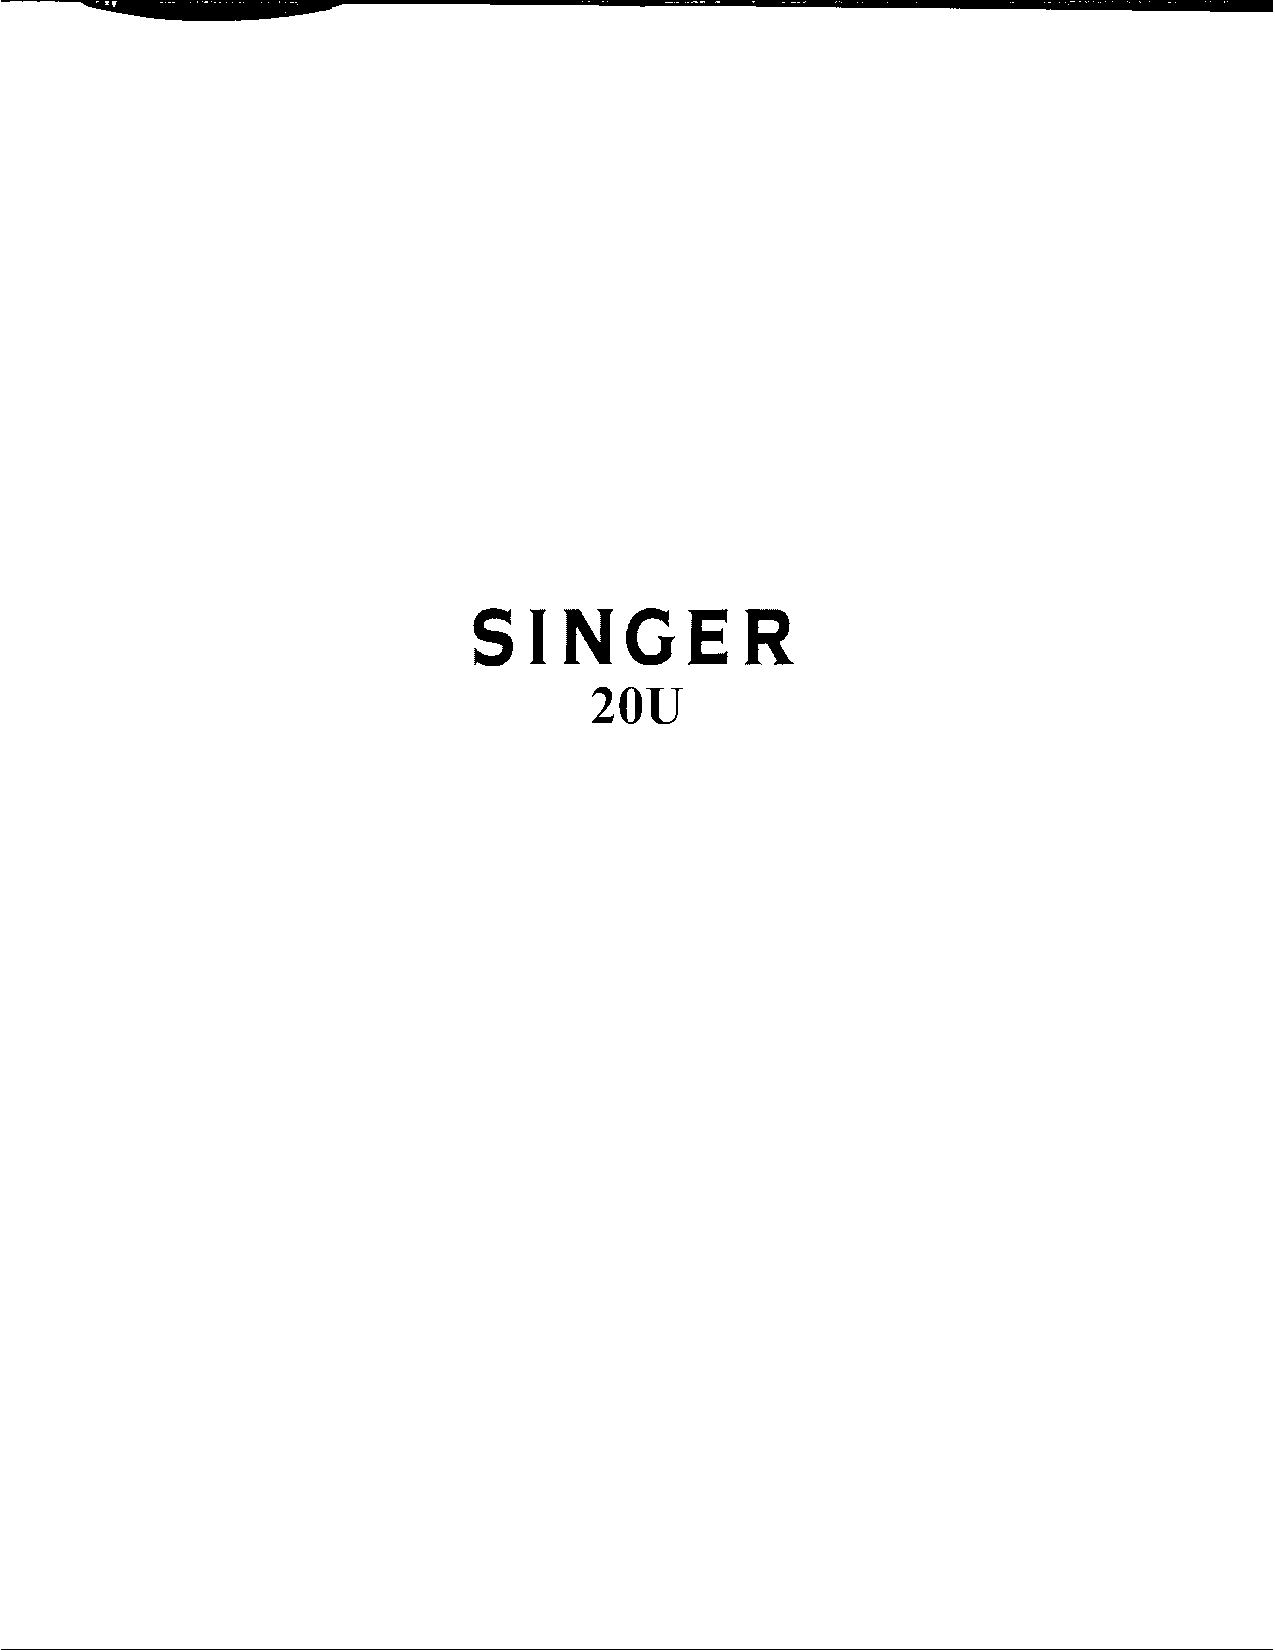 Singer 20U User Manual